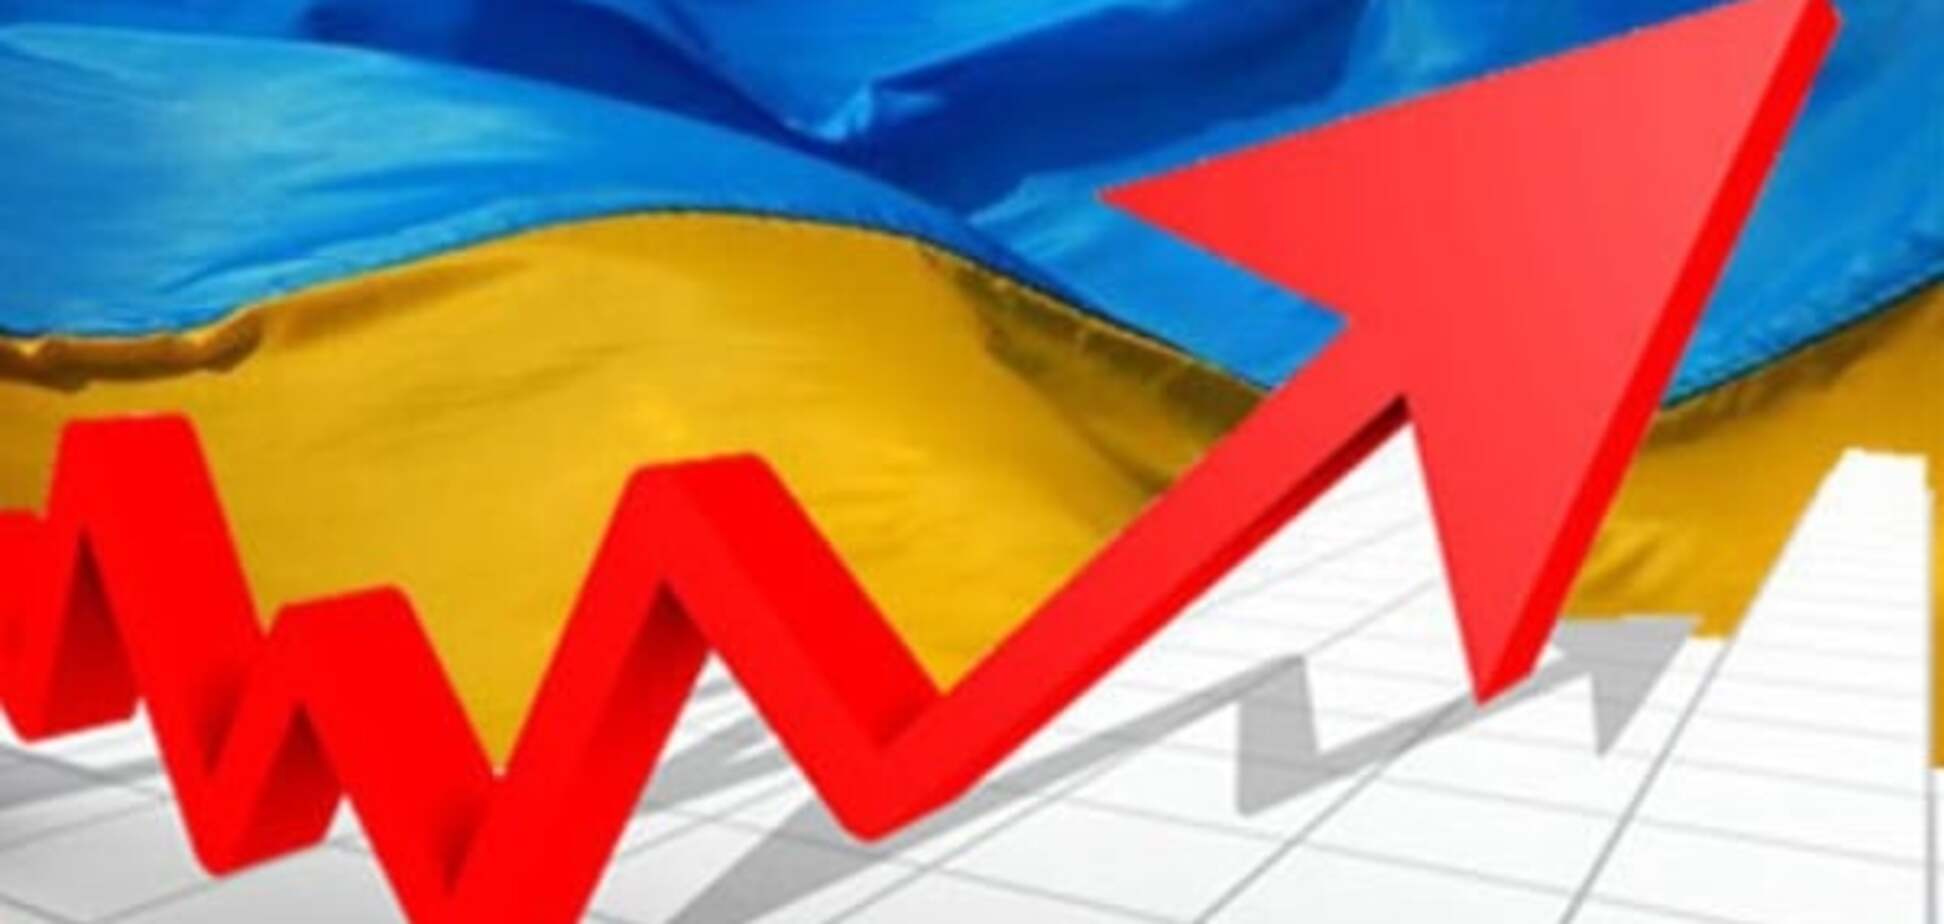 Всемирный банк дал прогноз о росте экономики Украины в 2016 году